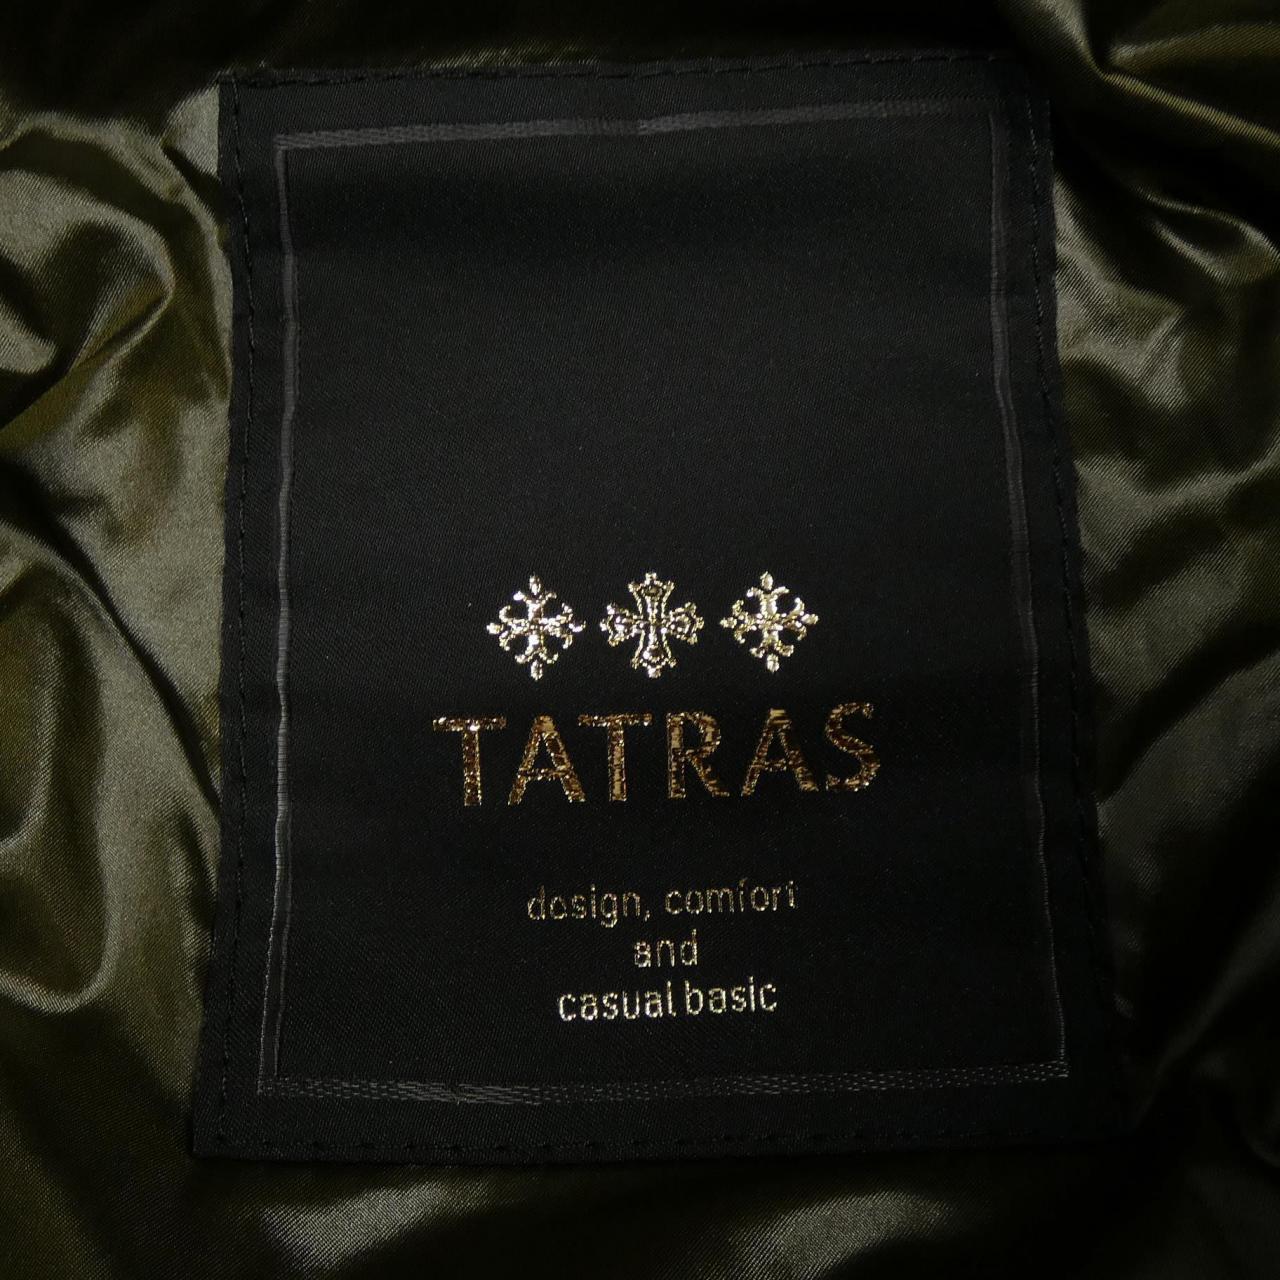 タトラス TATRAS ダウンジャケット